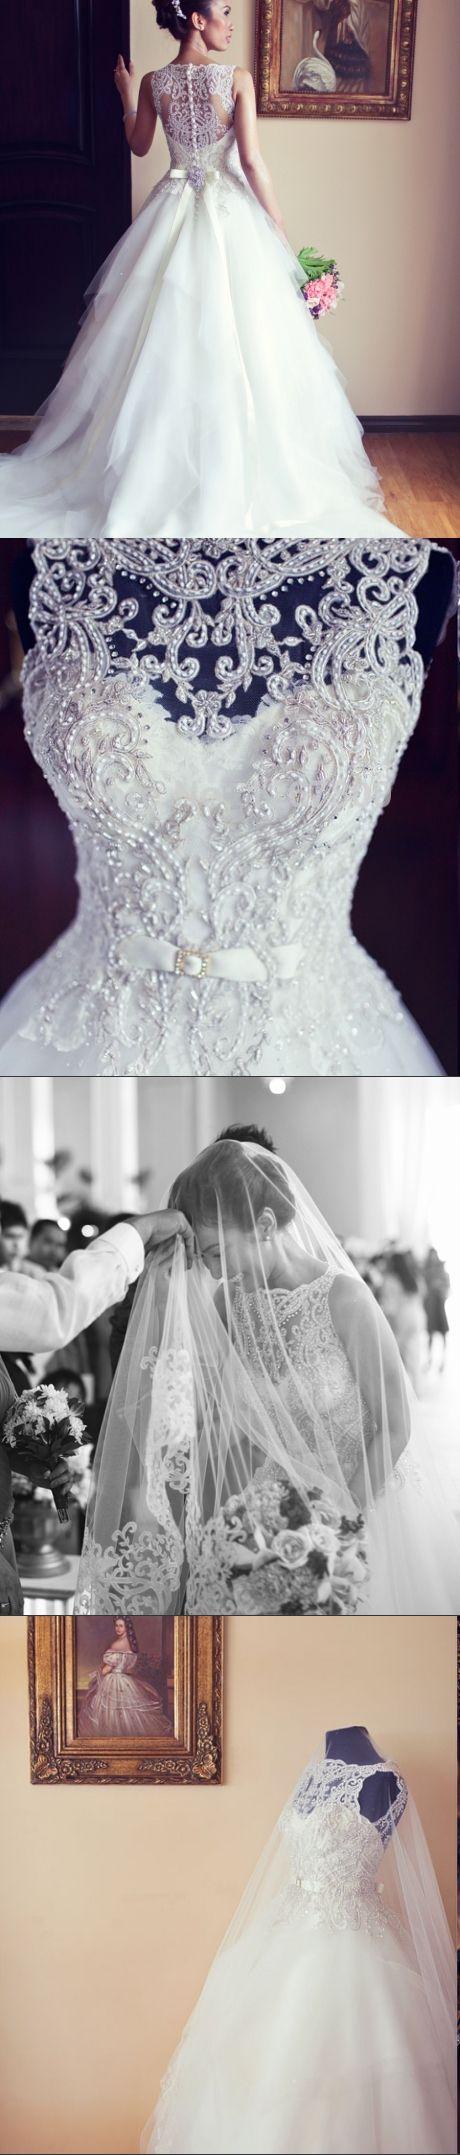 Hochzeit - Ball Gown White Wedding Dress,V Neck Wedding Dress,White Wedding Gown,White Bridal Dress,Sexy Bridal Dress,Wedding Party Dress RE109 From Dresscomeon